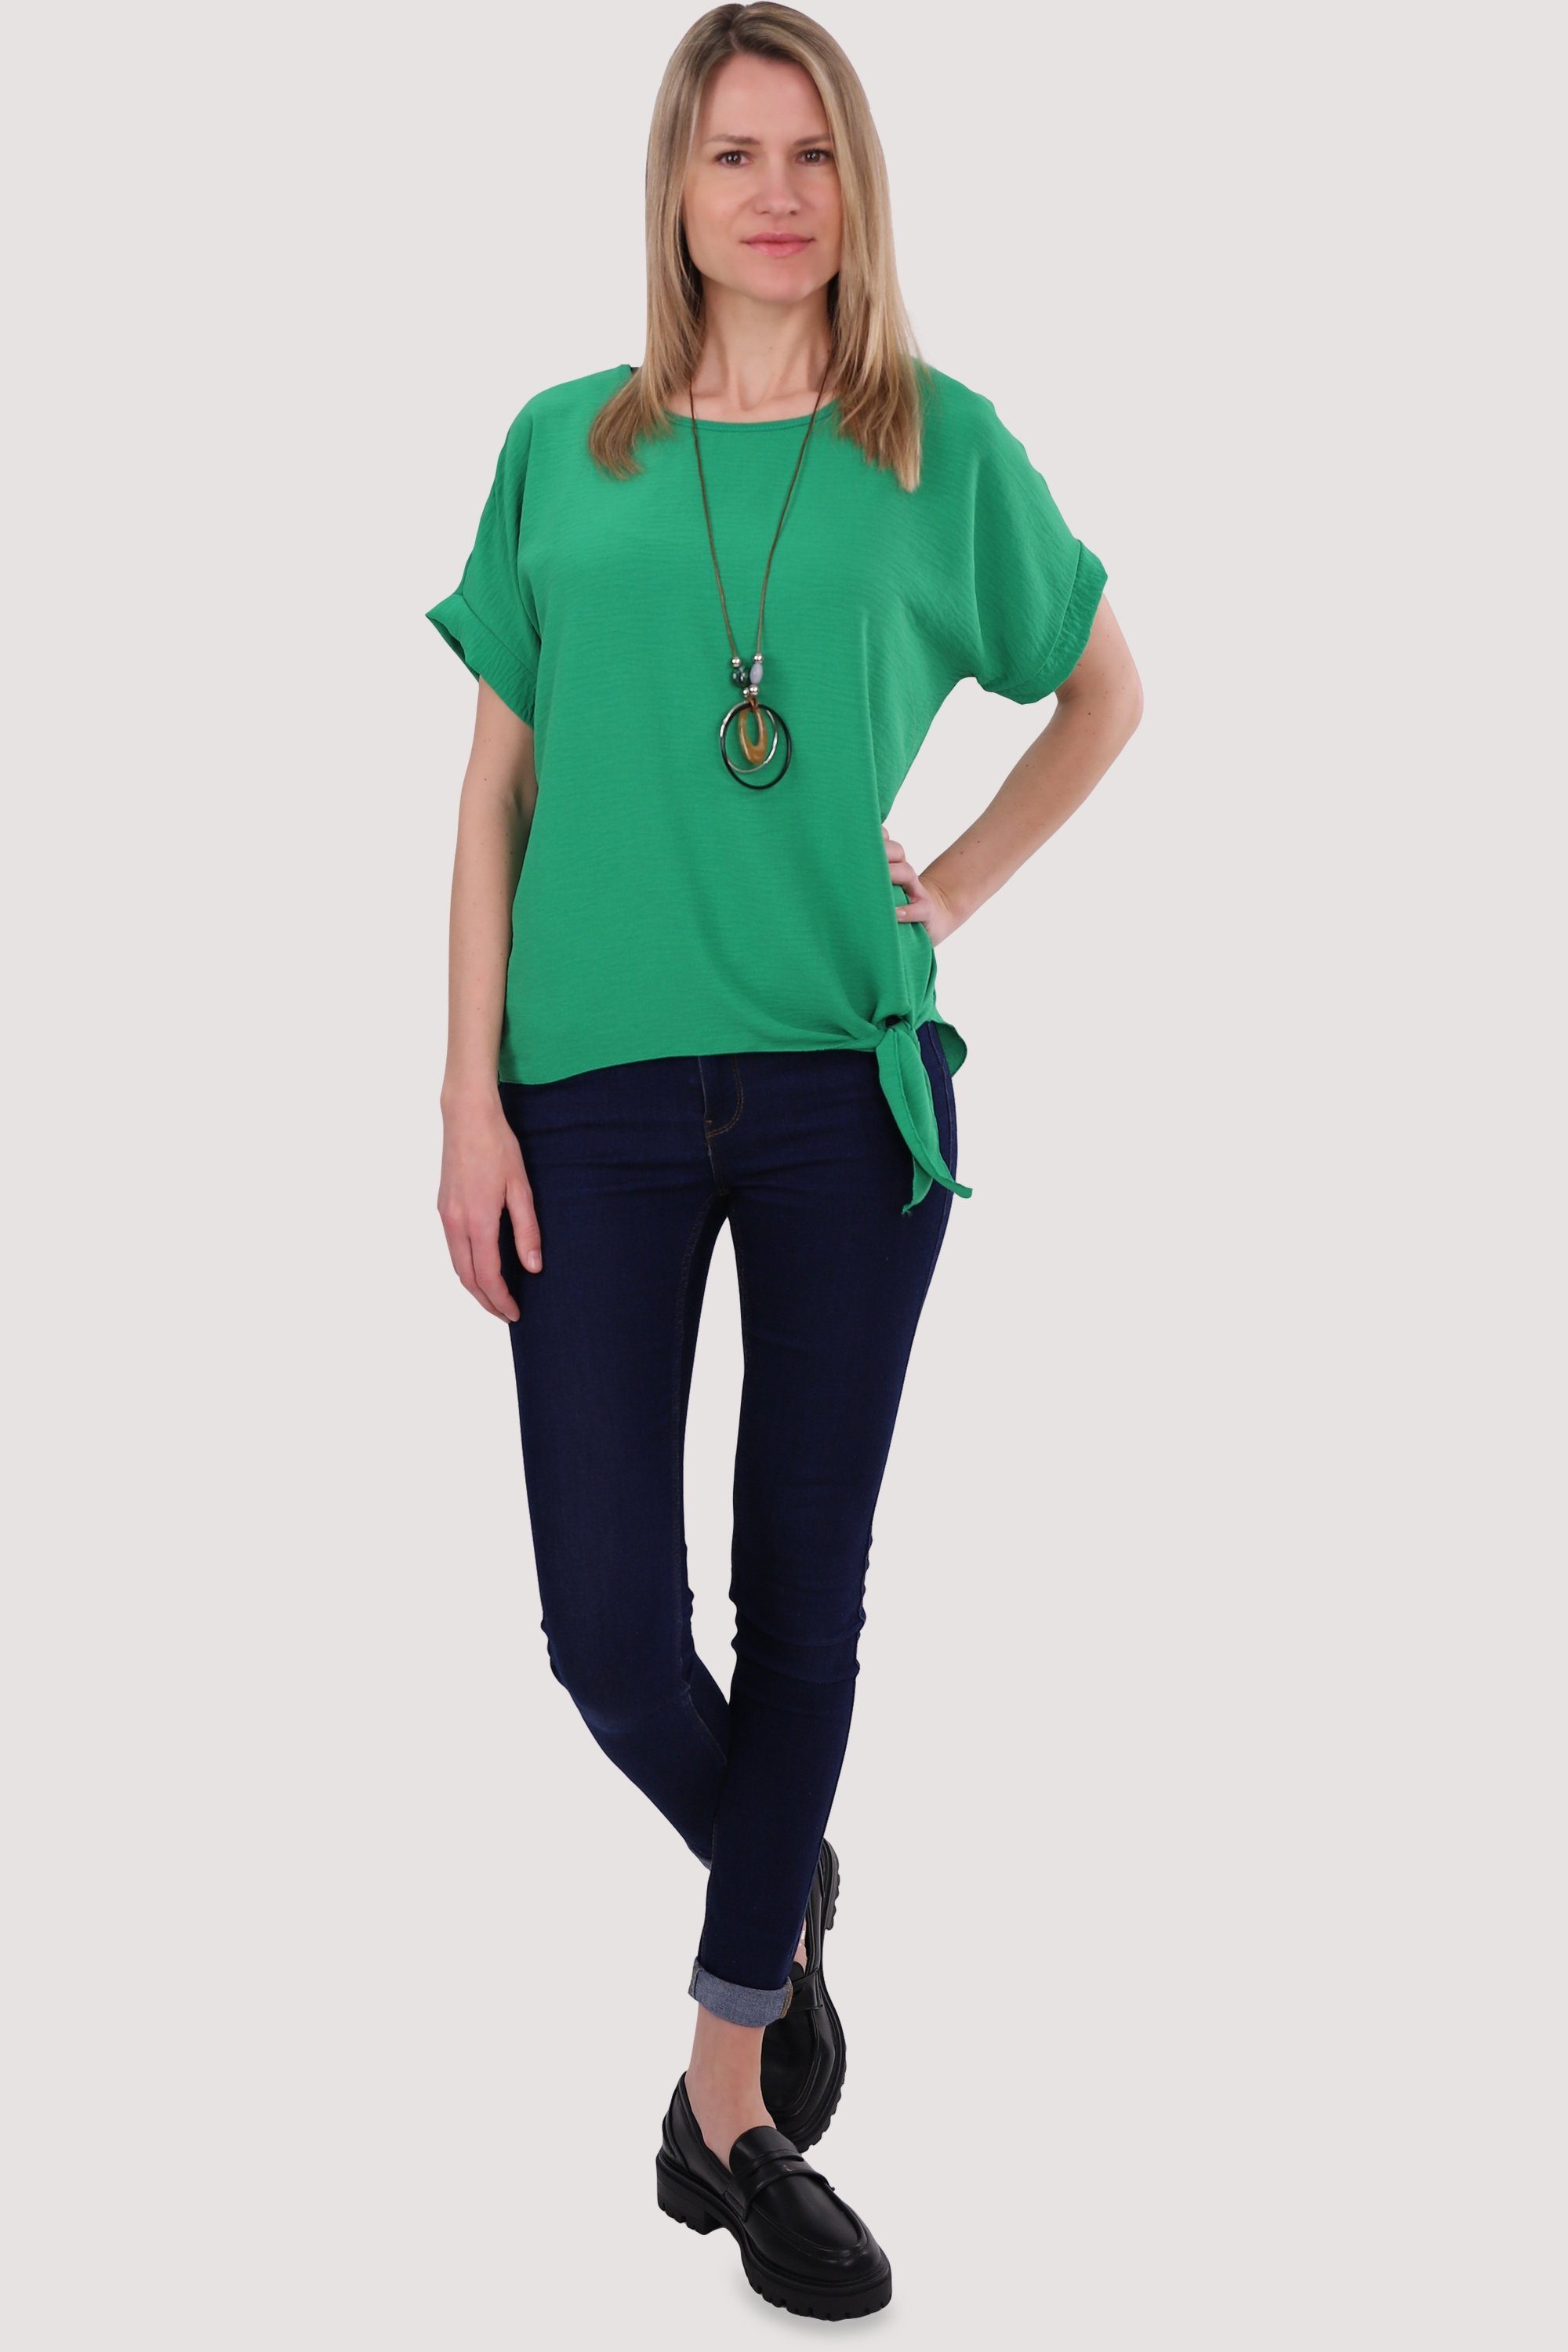 Bindeknoten grün Blusenshirt 10508 fashion Kette more than malito mit Einheitsgröße und